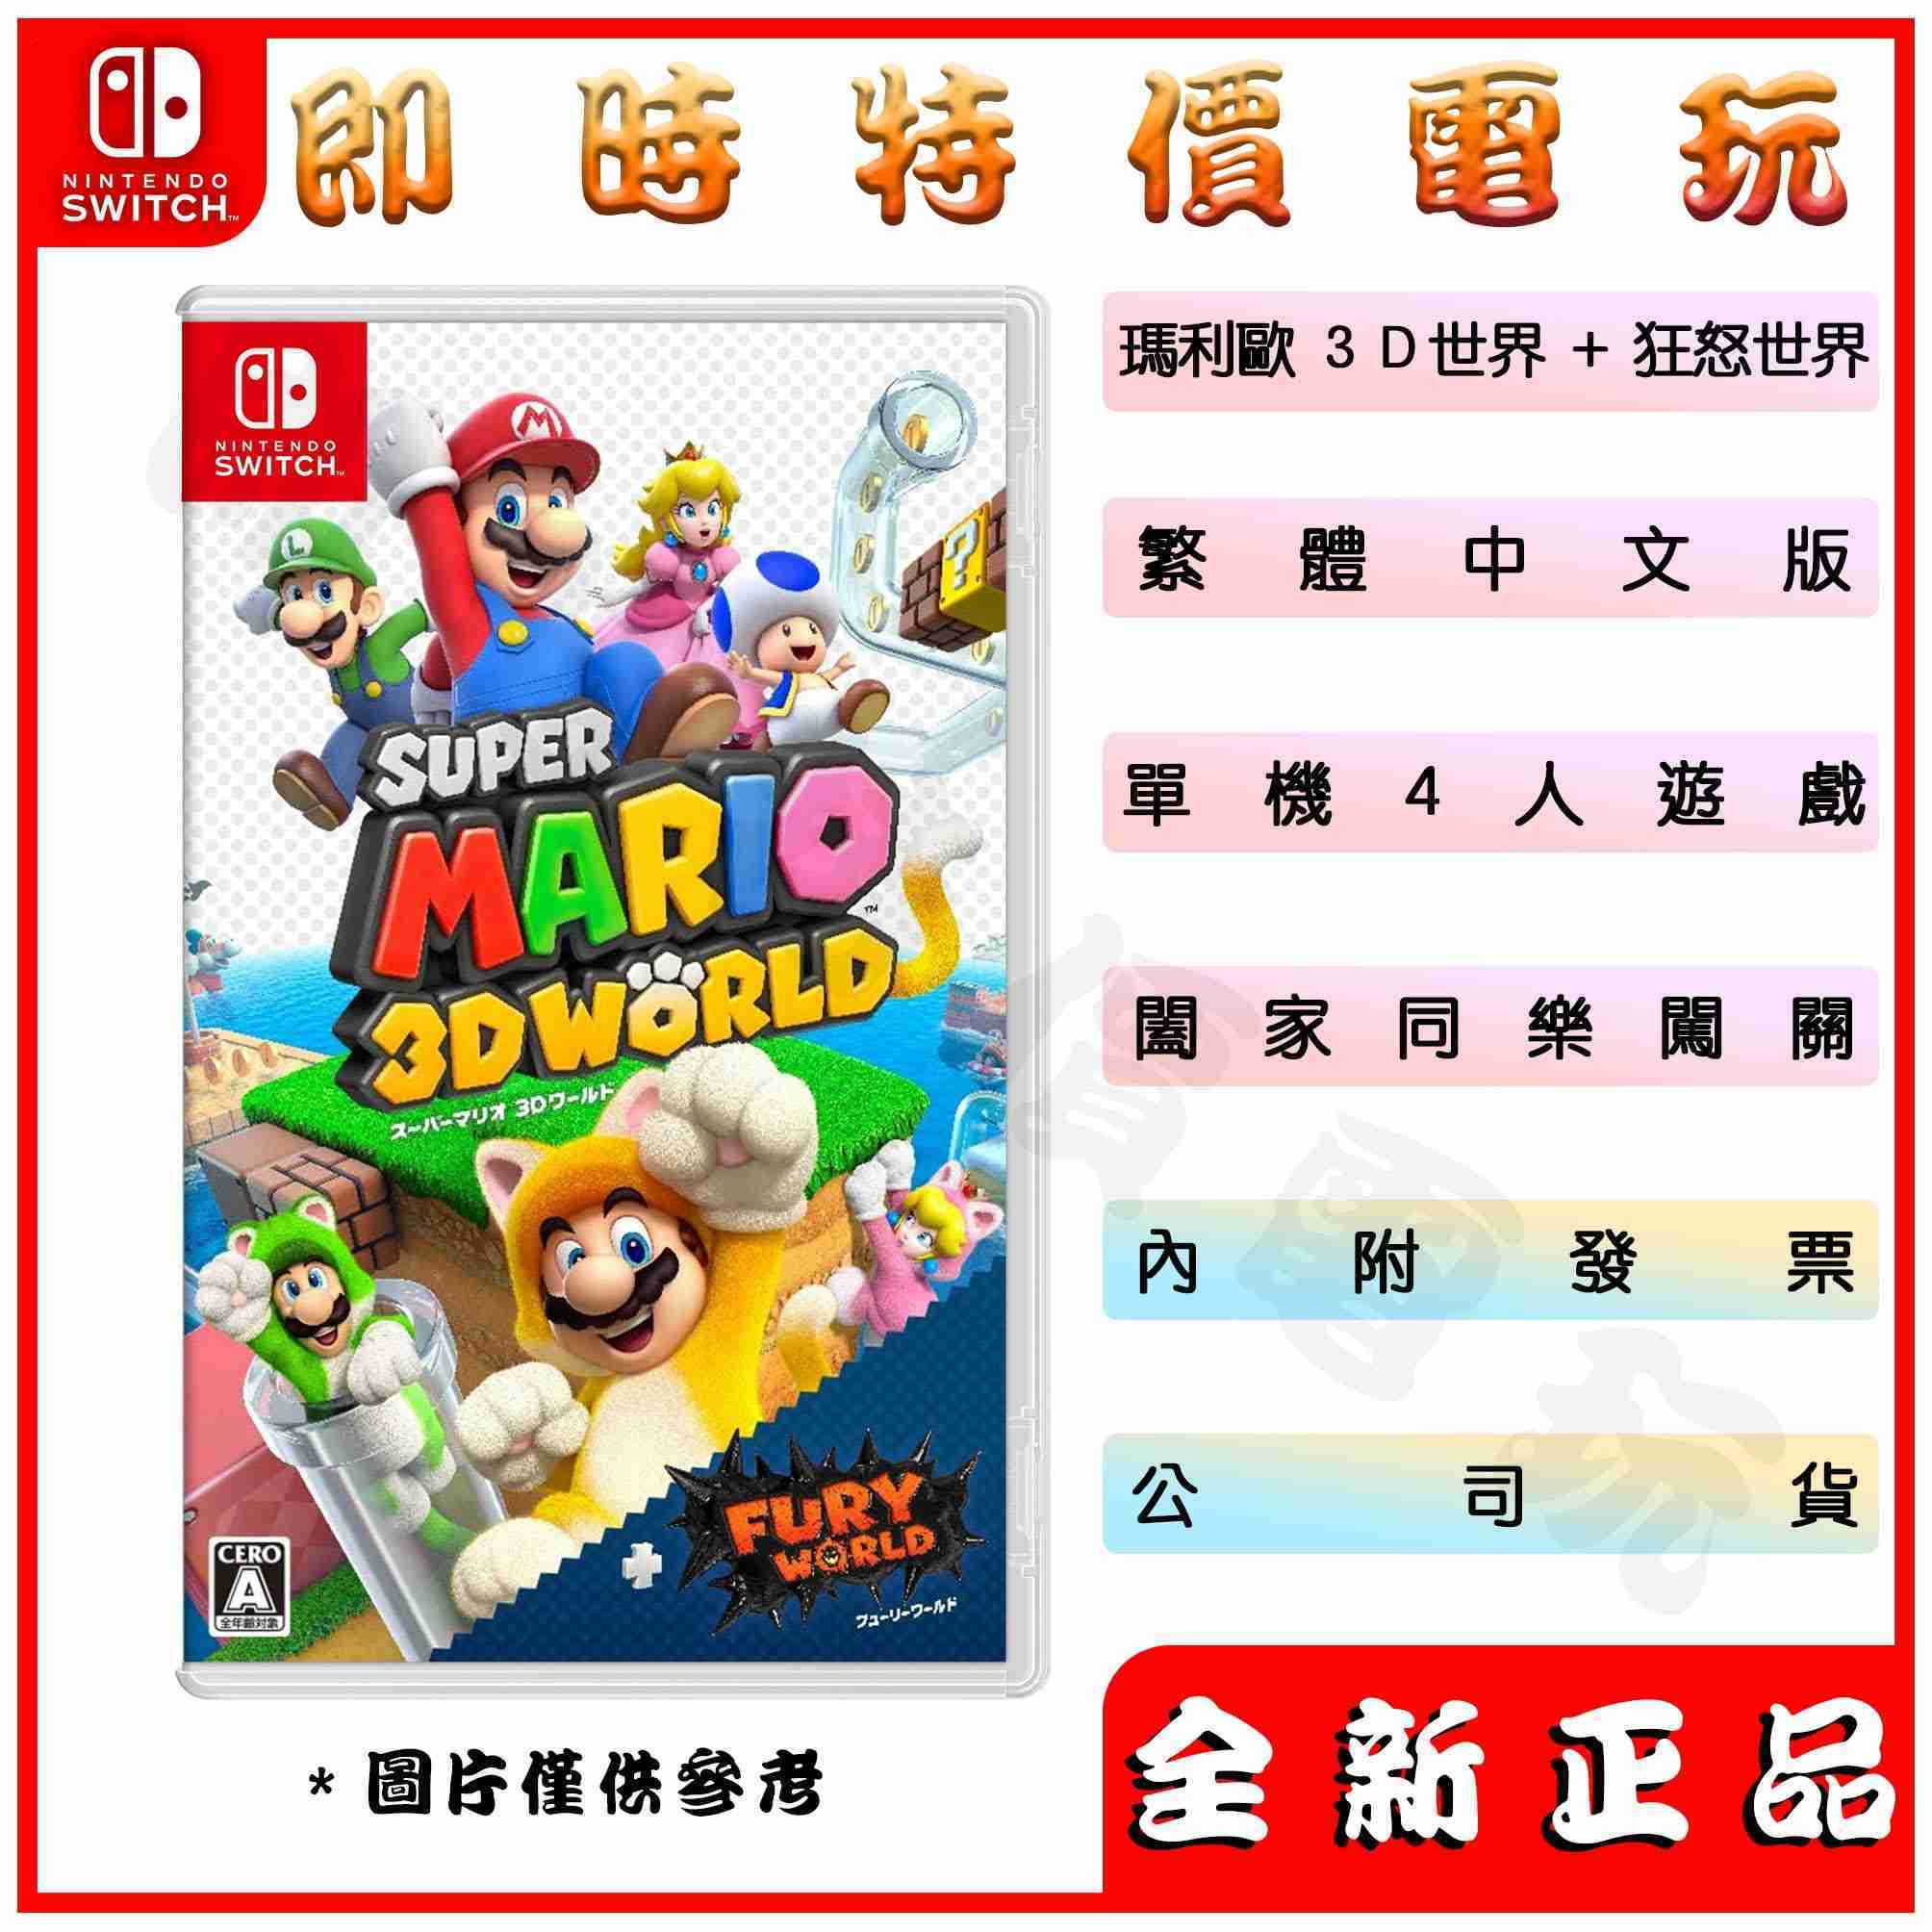 全新現貨 台灣公司貨 中文封面 NS switch超級瑪利歐 3D世界+狂怒世界 中文版